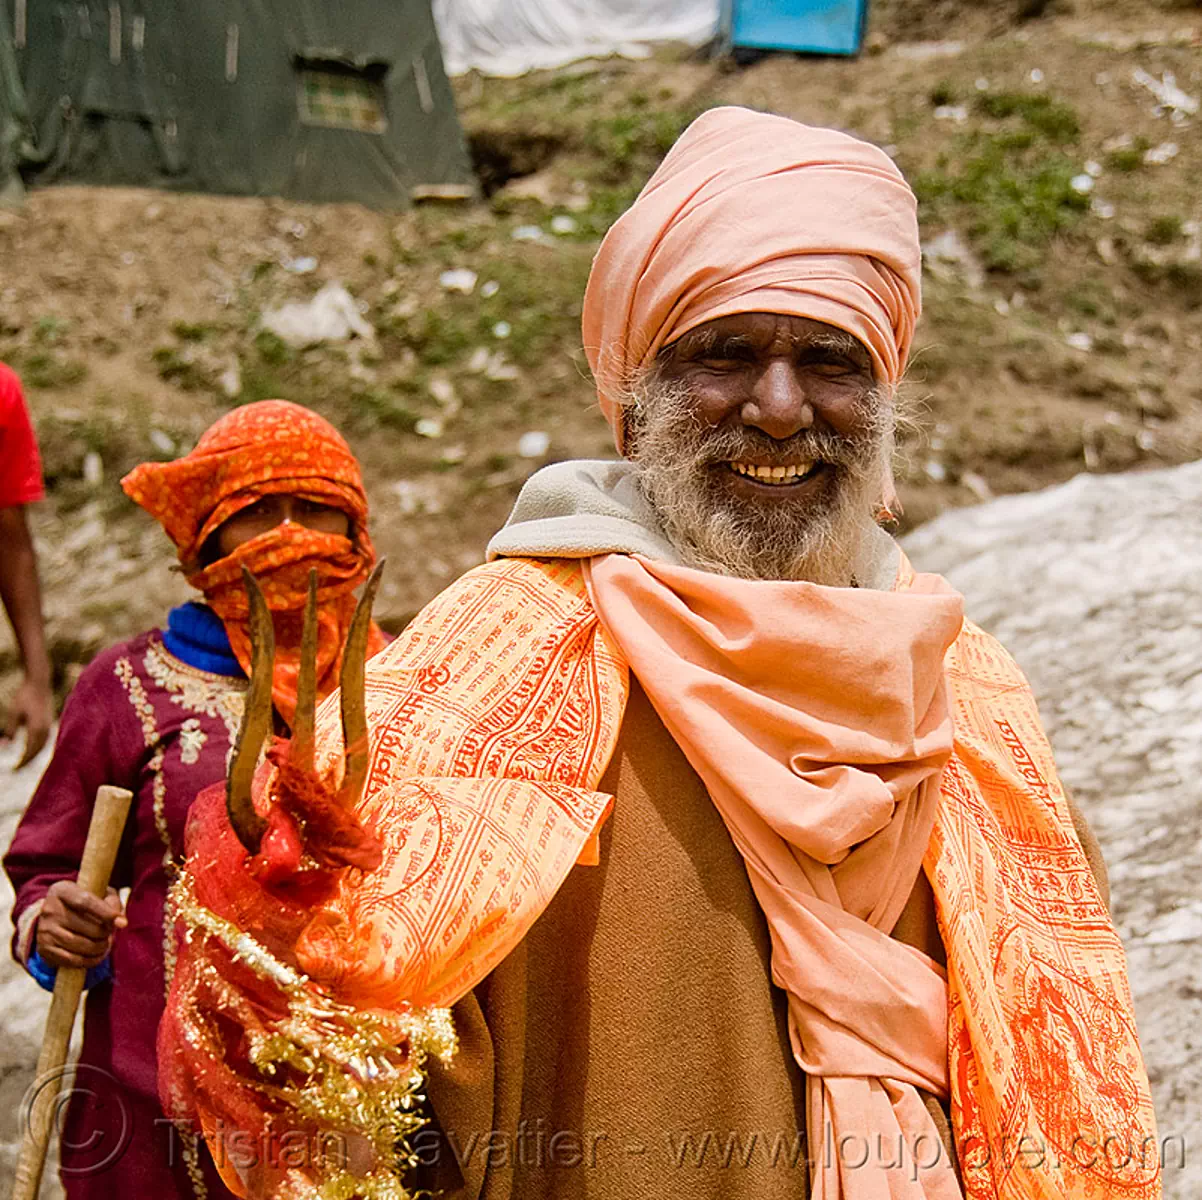 sadhu (hindu holy man) with trident - amarnath yatra (pilgrimage) - kashmir, amarnath yatra, baba, beard, bhagwa, hiking, hindu holy man, hindu pilgrimage, hinduism, india, kashmir, mountain trail, mountains, old man, pilgrim, sadhu, saffron color, trekking, trident